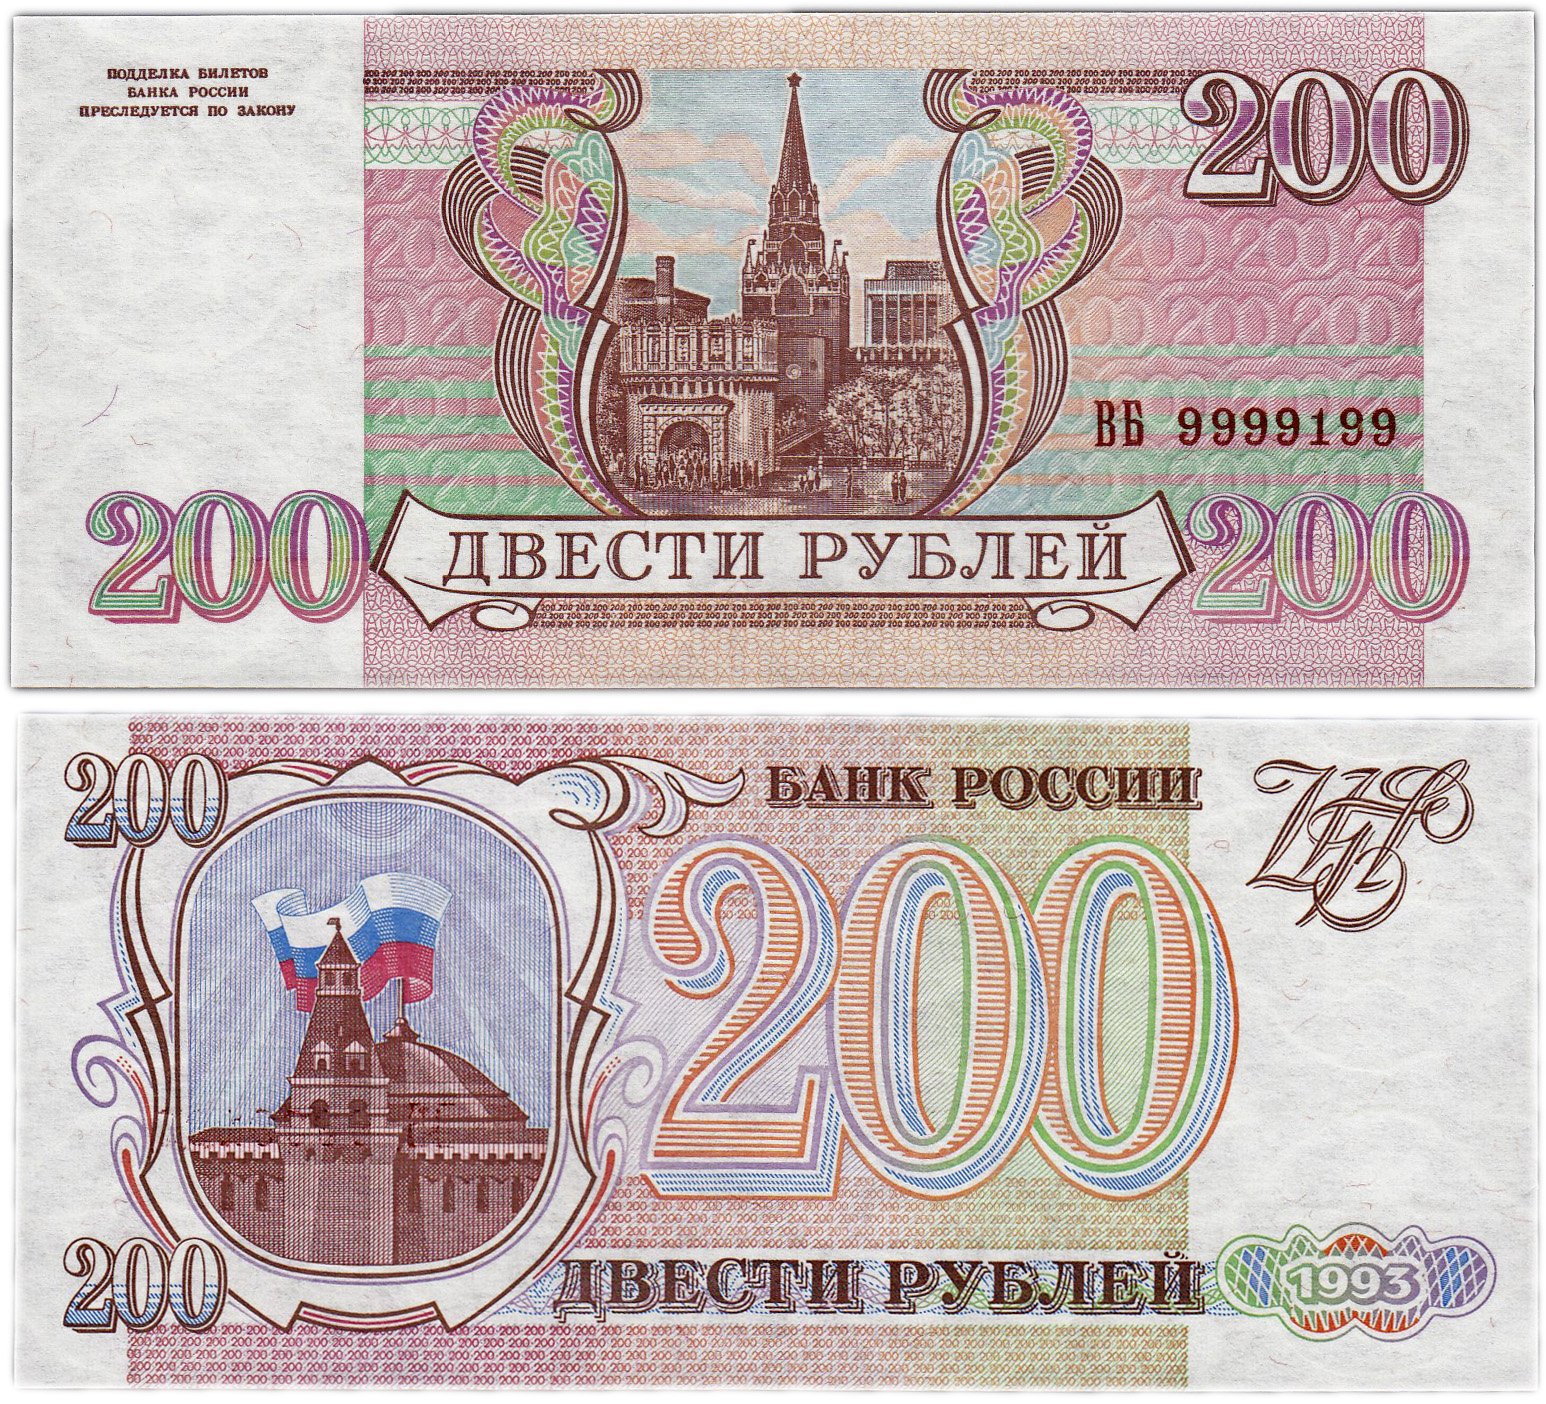 80 российских рублей. 200 Рублей 1995. Двести рублей купюра 1993. Российские рубли 1993 года. Банкнота 200 рублей 1995.